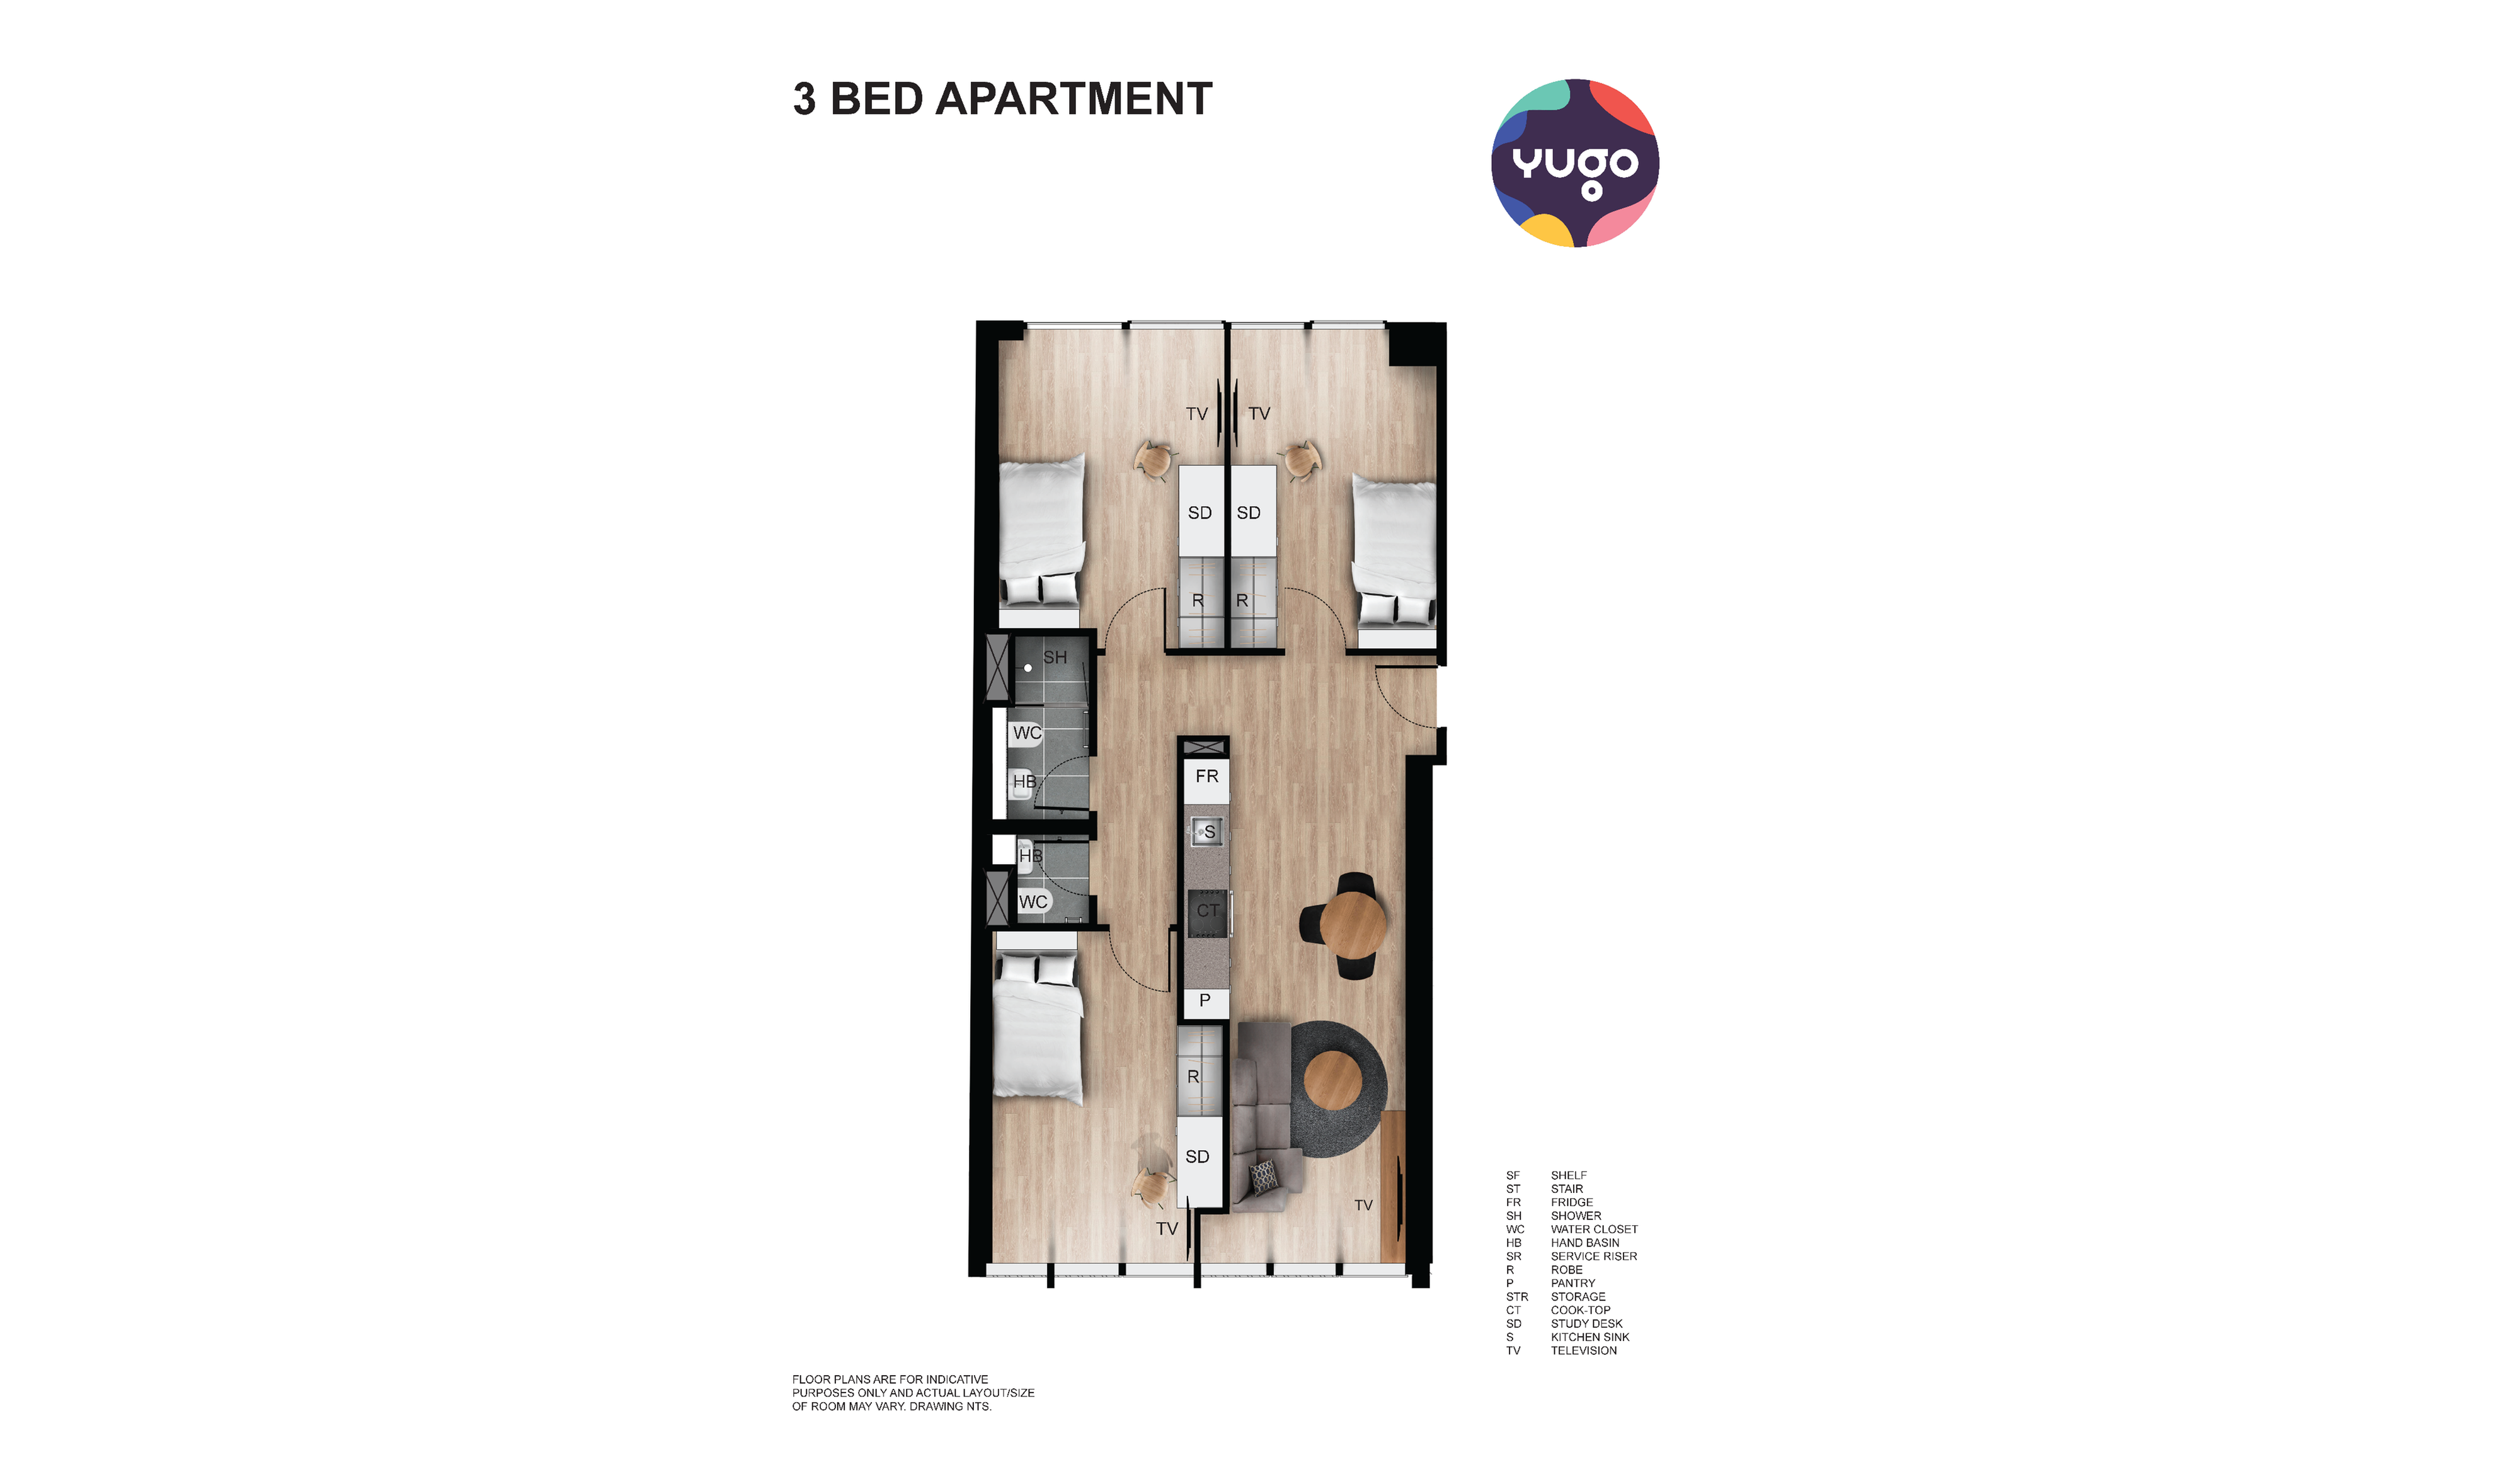 Appartamento con 3 letti (1)